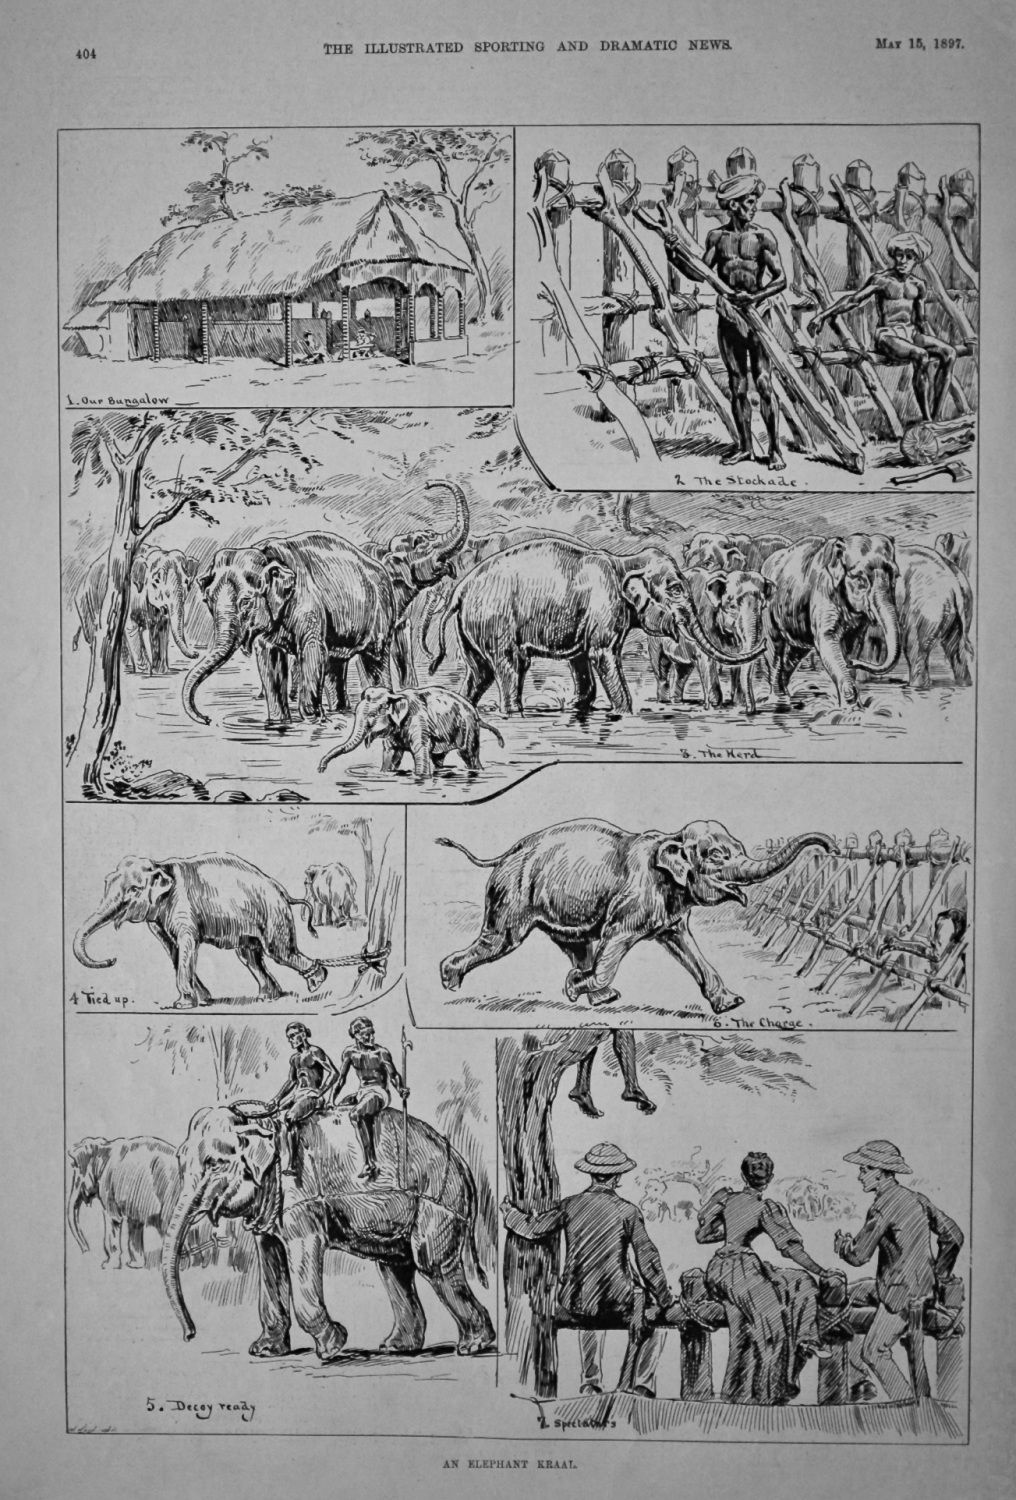 An Elephant Kraal.  1897.